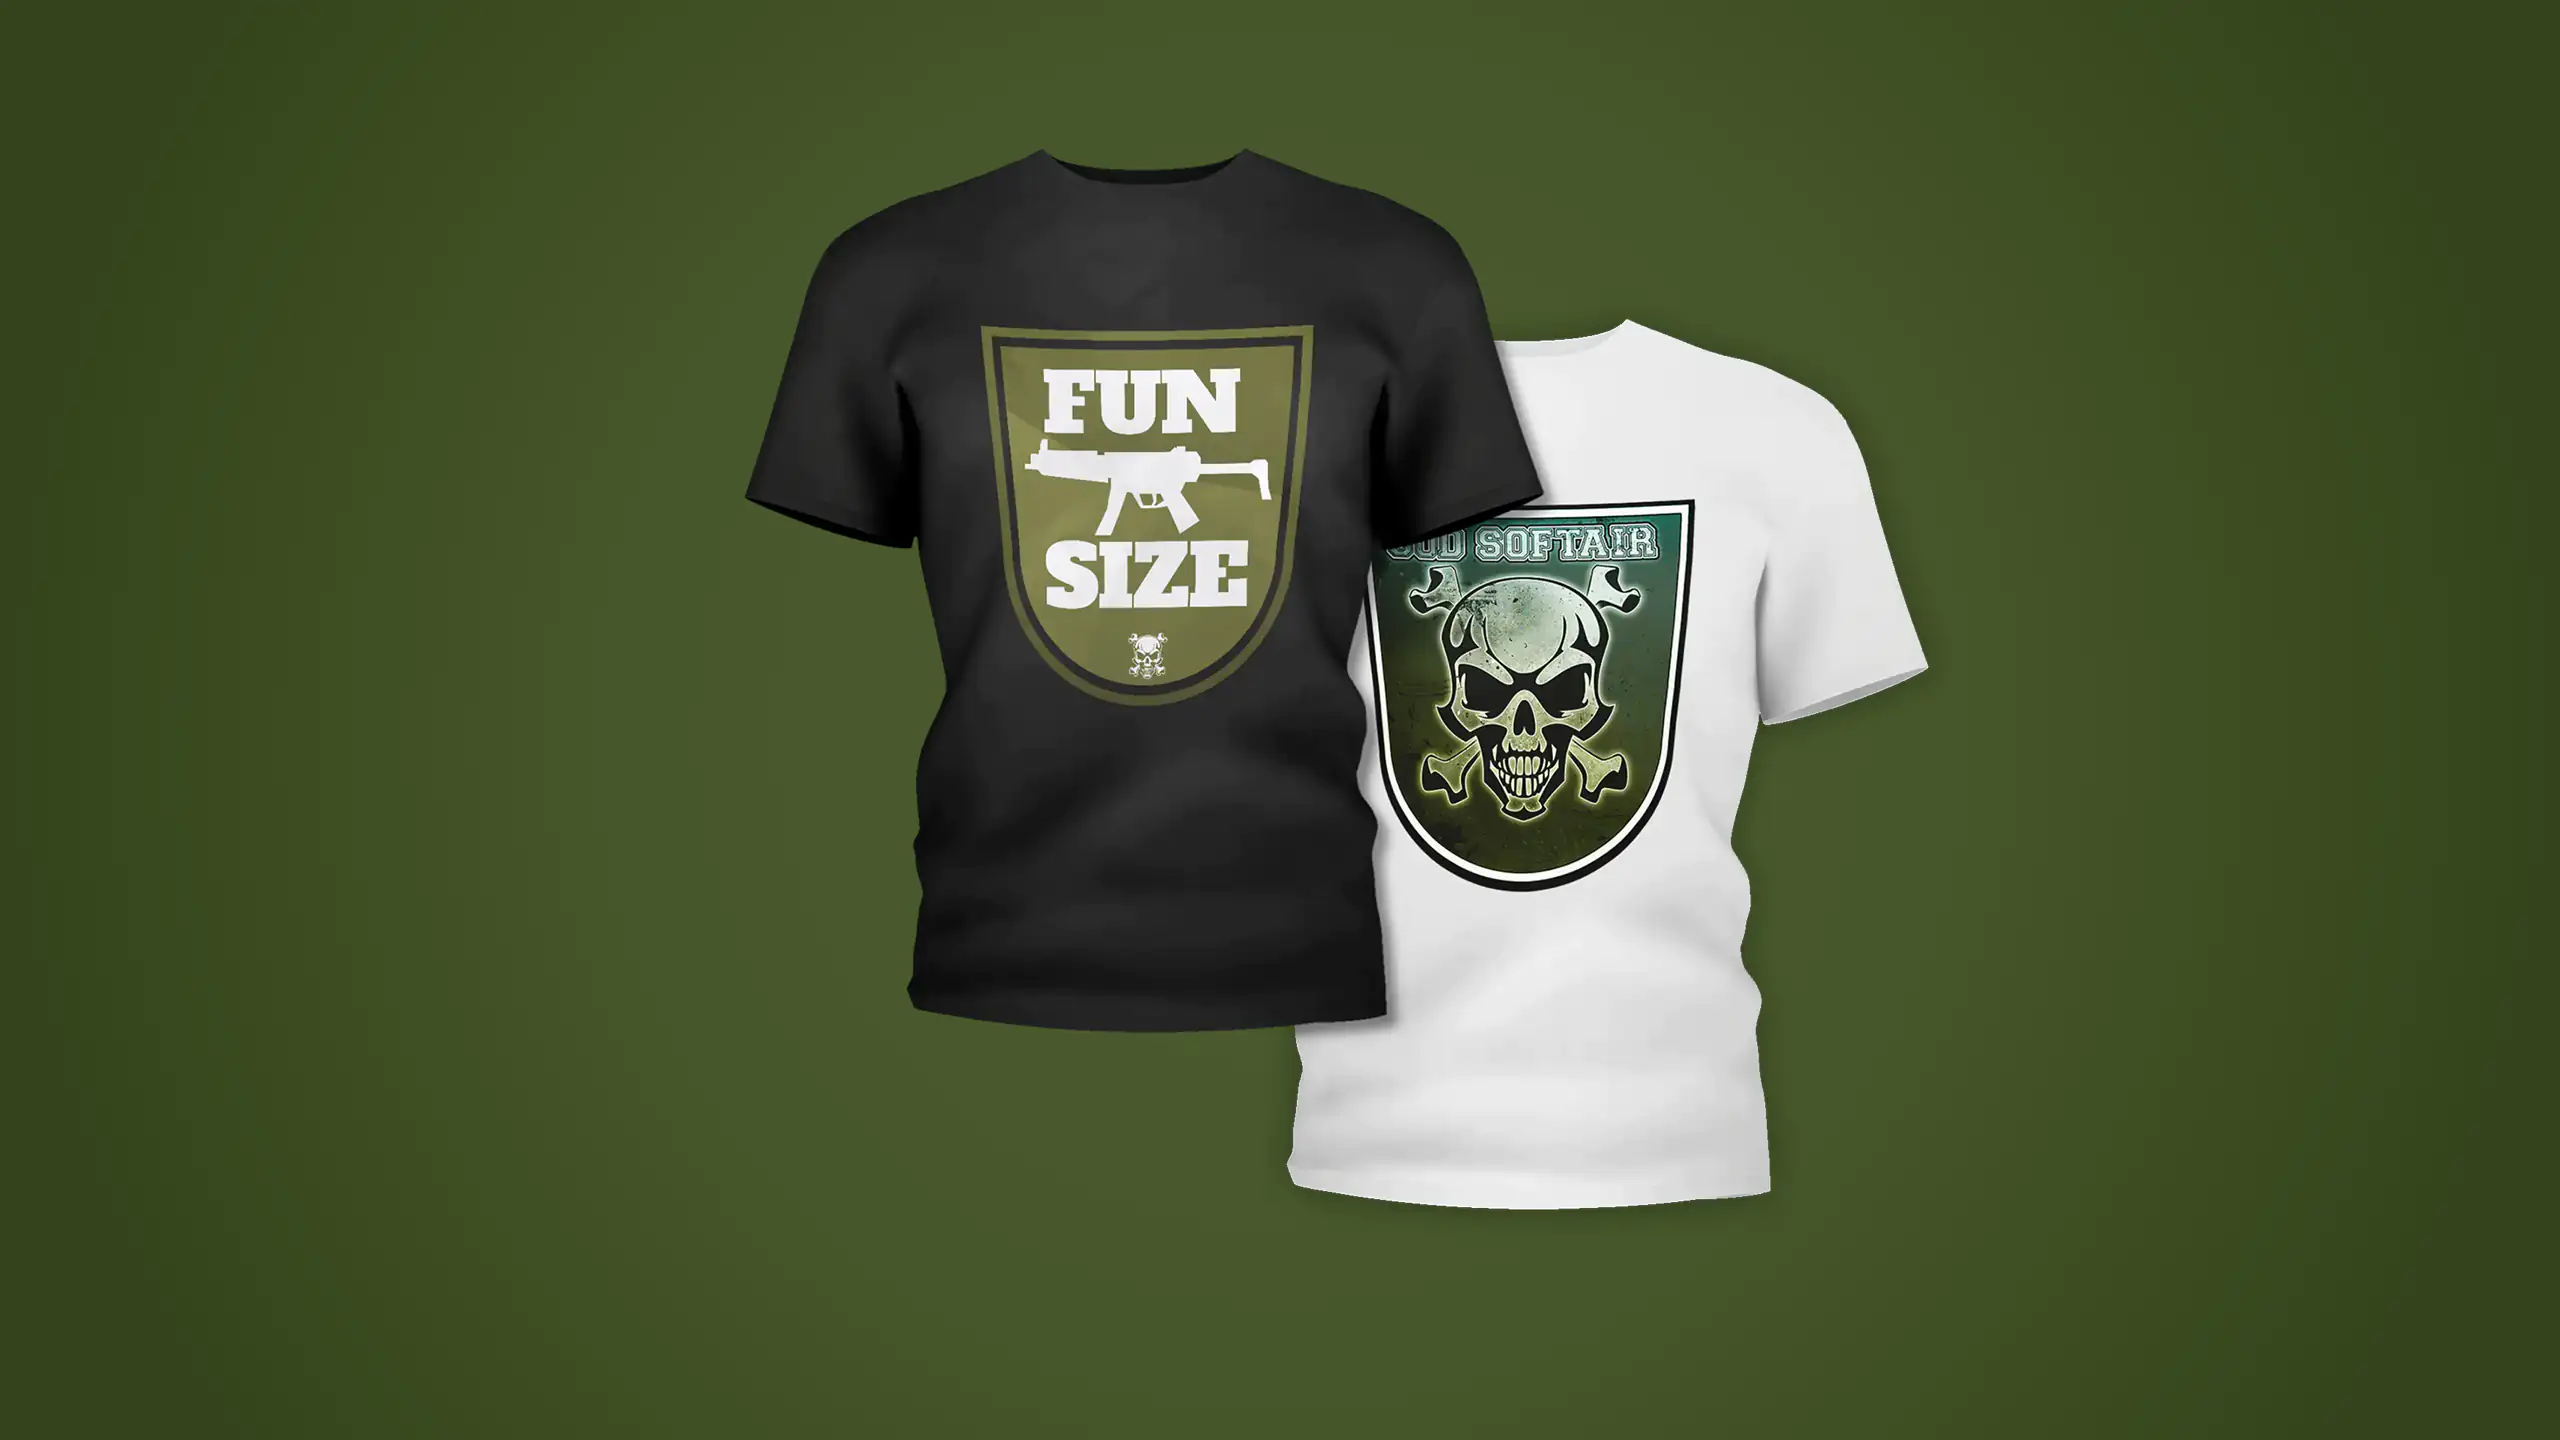 Mockup eines weißem und eines schwarzen Shirts mit Airsoft-Motiven auf grünem Hintergrund. Auf einem ist eine Grafik einer MP5 mit dem Text "Fun Size" zu sehen, auf dem anderem, dem weißen, ist das Logo "SOD Softair" mit einem Totenkopf zu sehen.